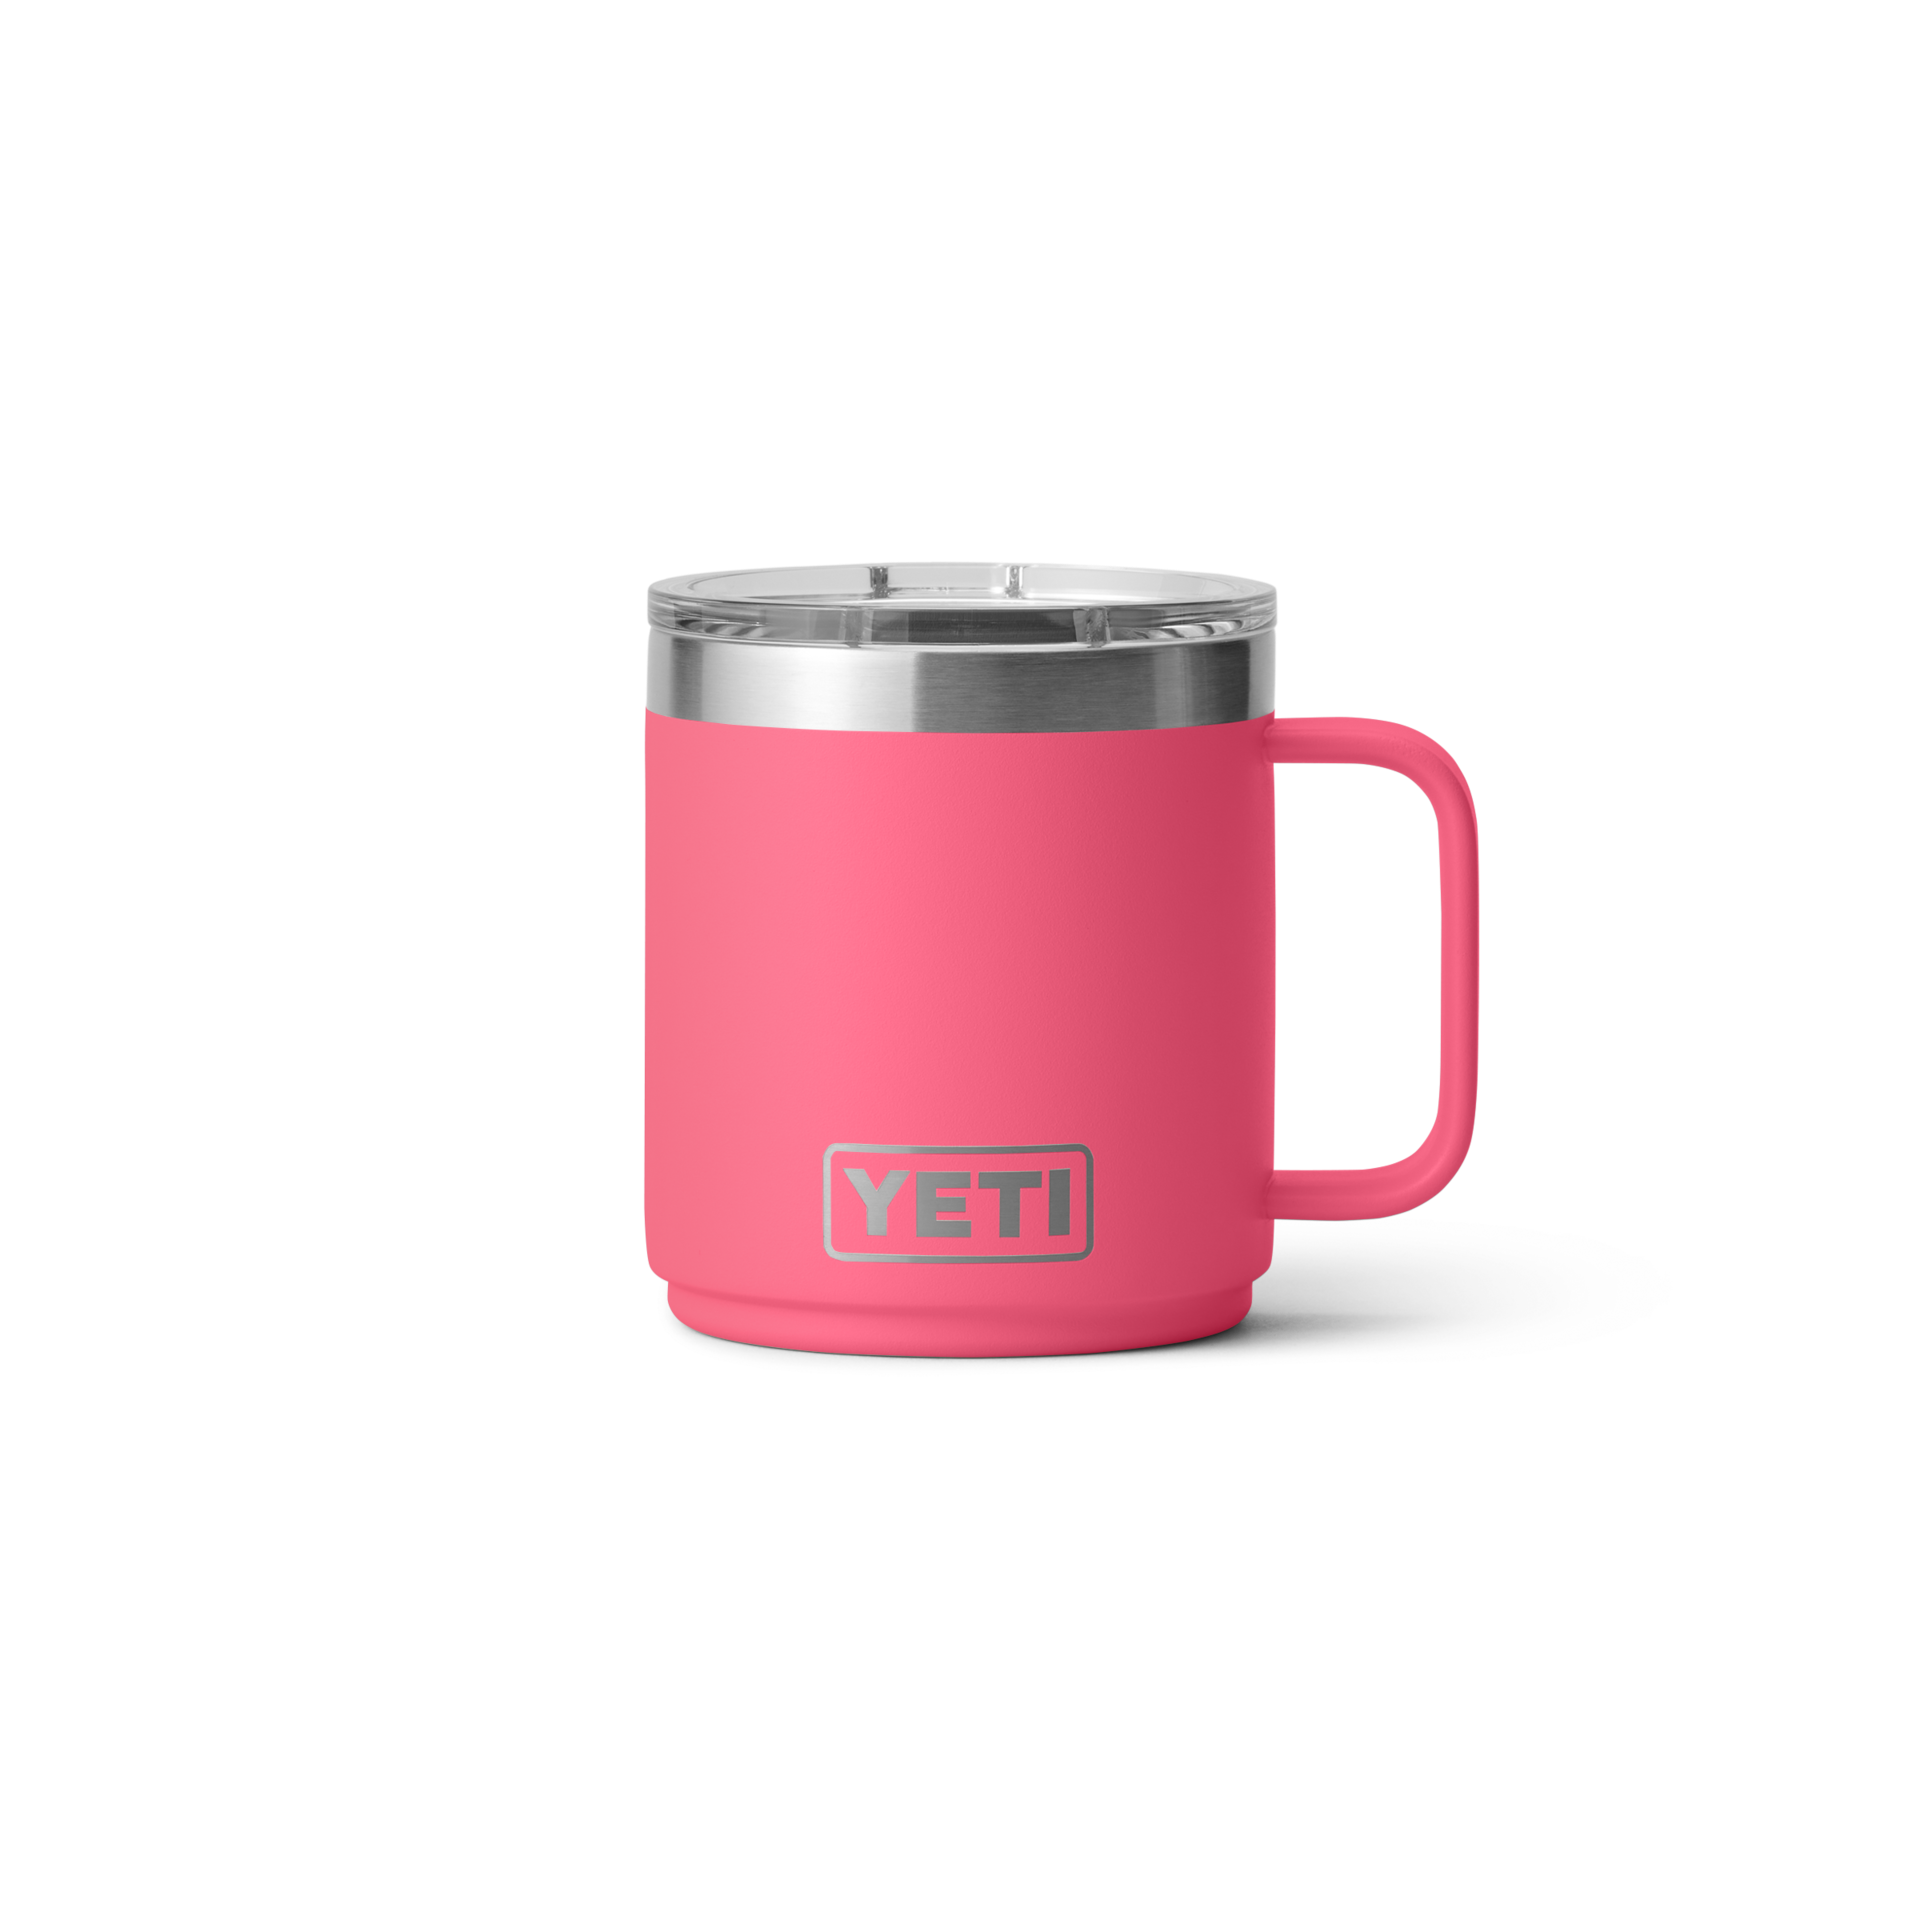 Yeti Rambler 10oz/295ml Mug with Magslider Lid - Tropical Pink - Seasonal